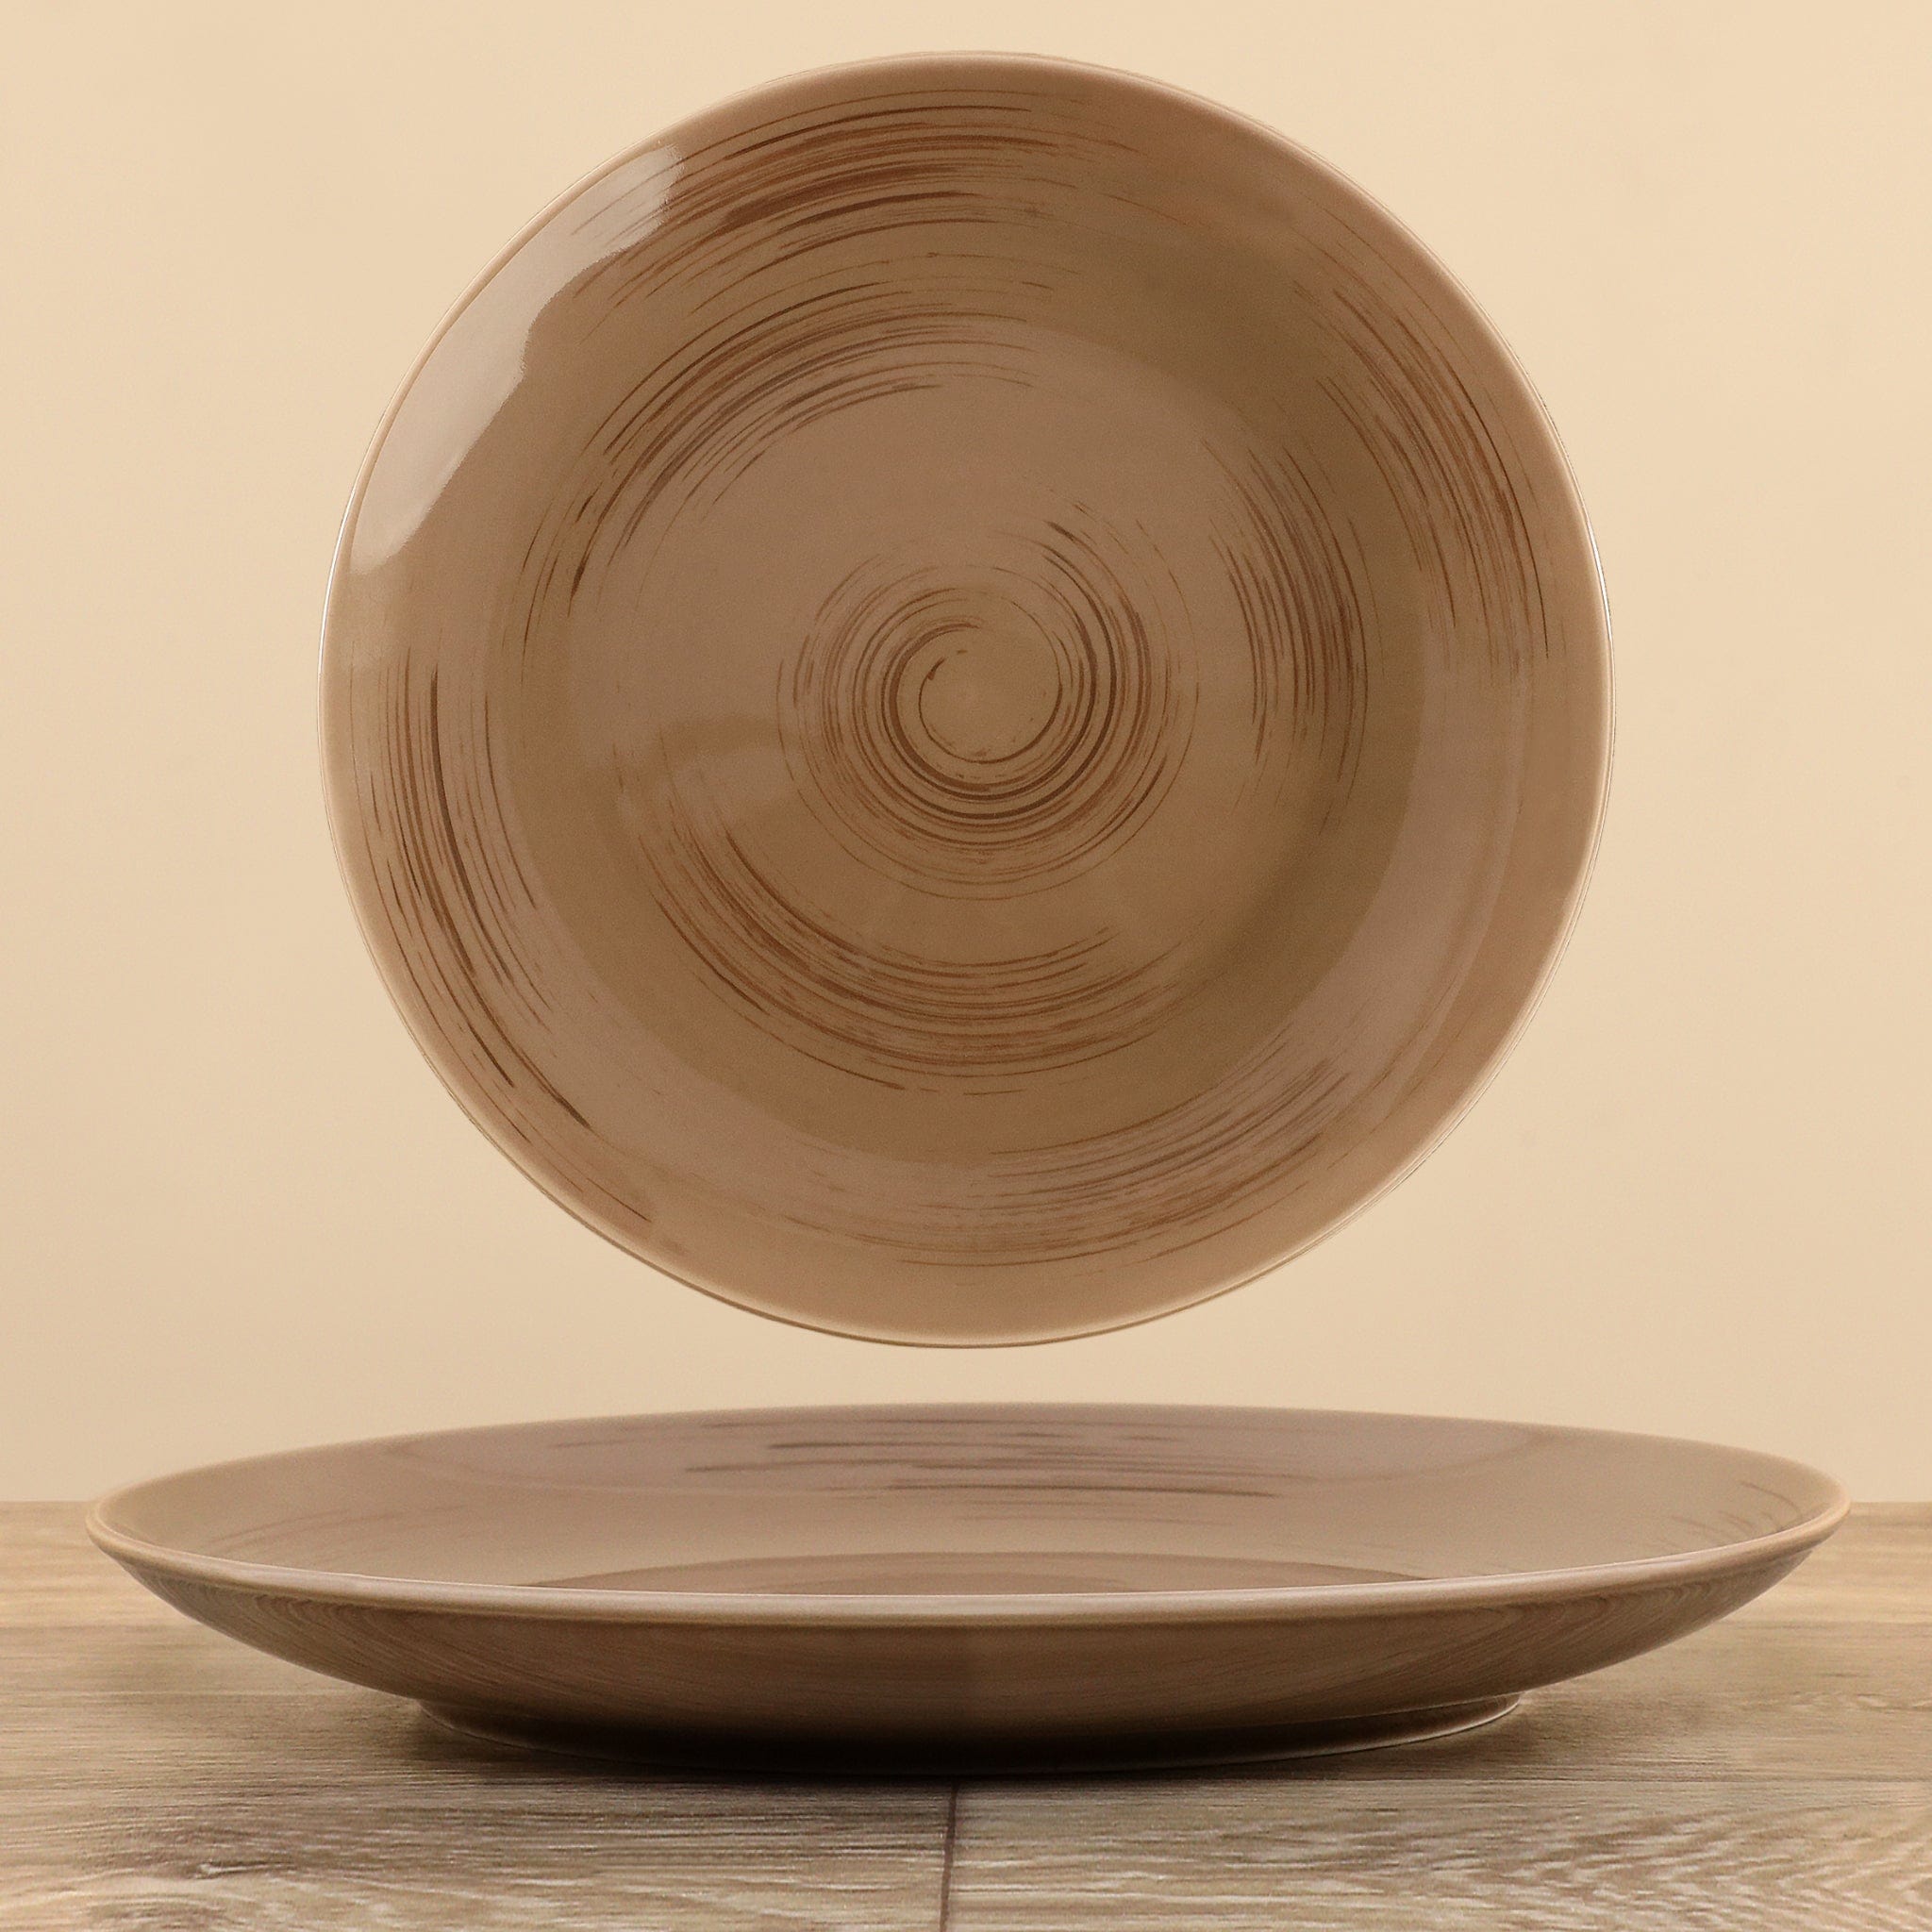 Round Plate - Bloomr